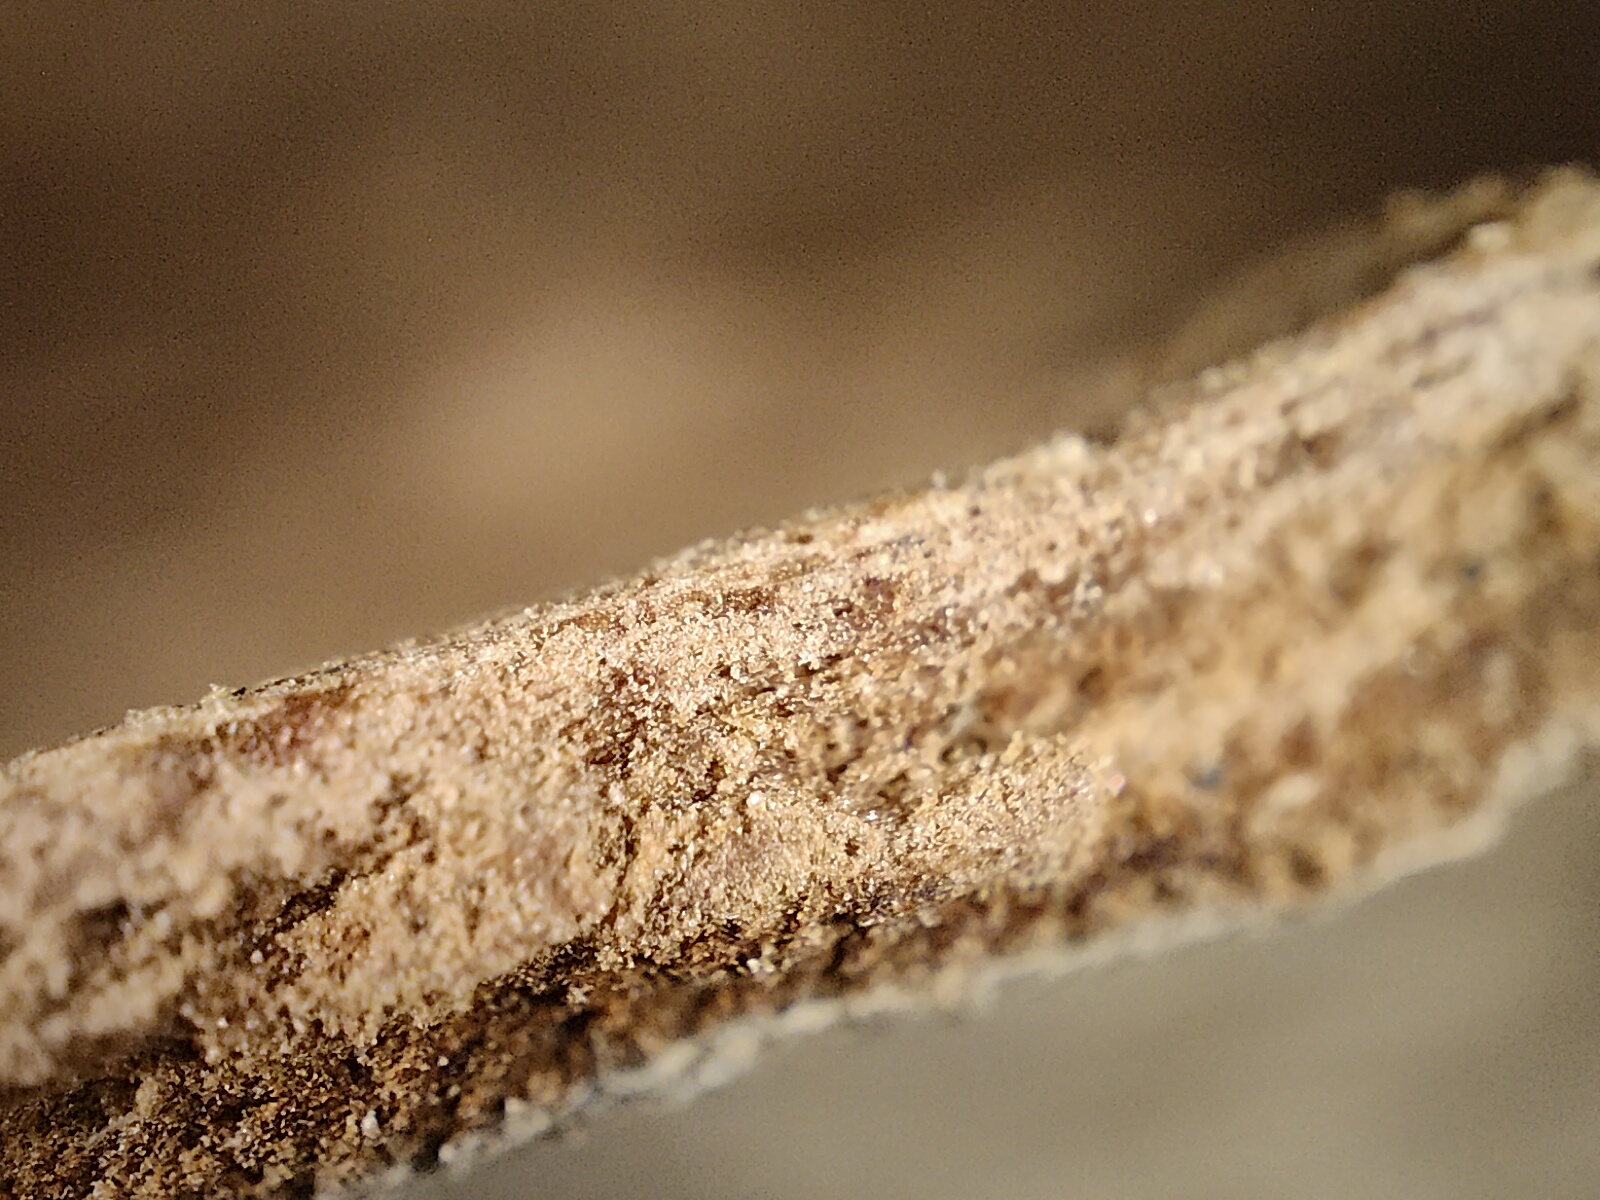 Μακρο όψη ενός ξυλιού κανέλας που φωτογραφήθηκε με την κάμερα μικροσκοπίου του Realme GT 2 Pro.